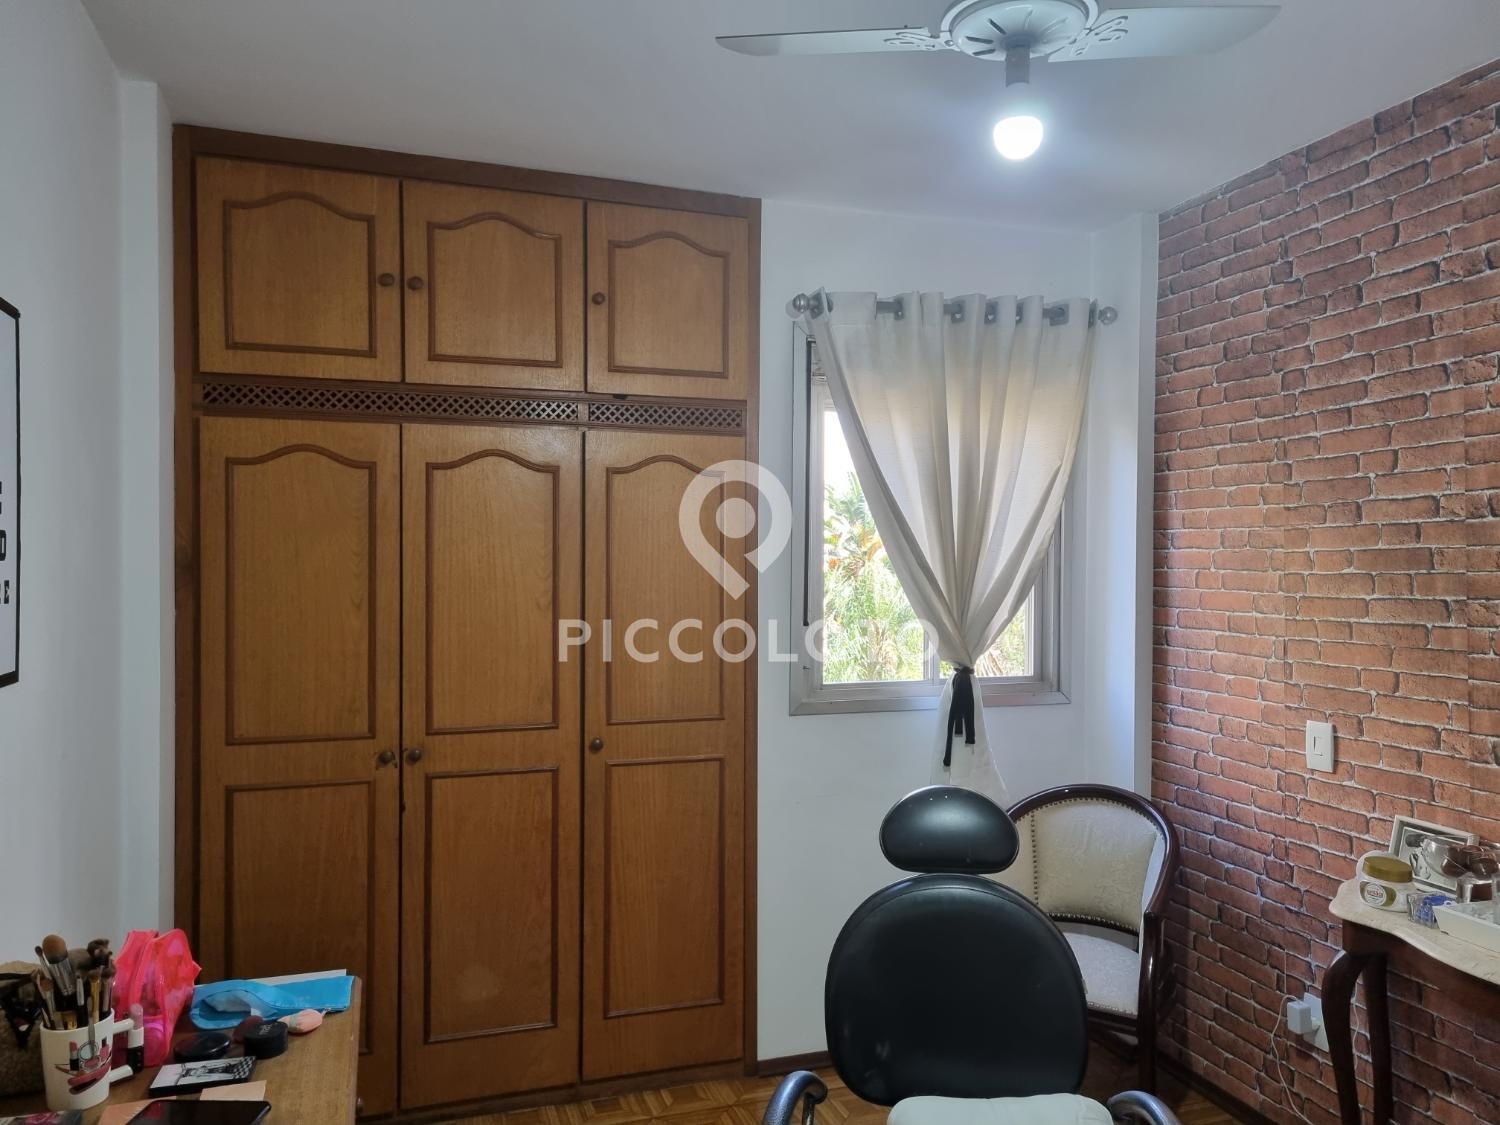 Piccoloto -Apartamento à venda no Vila Paraíso em Campinas